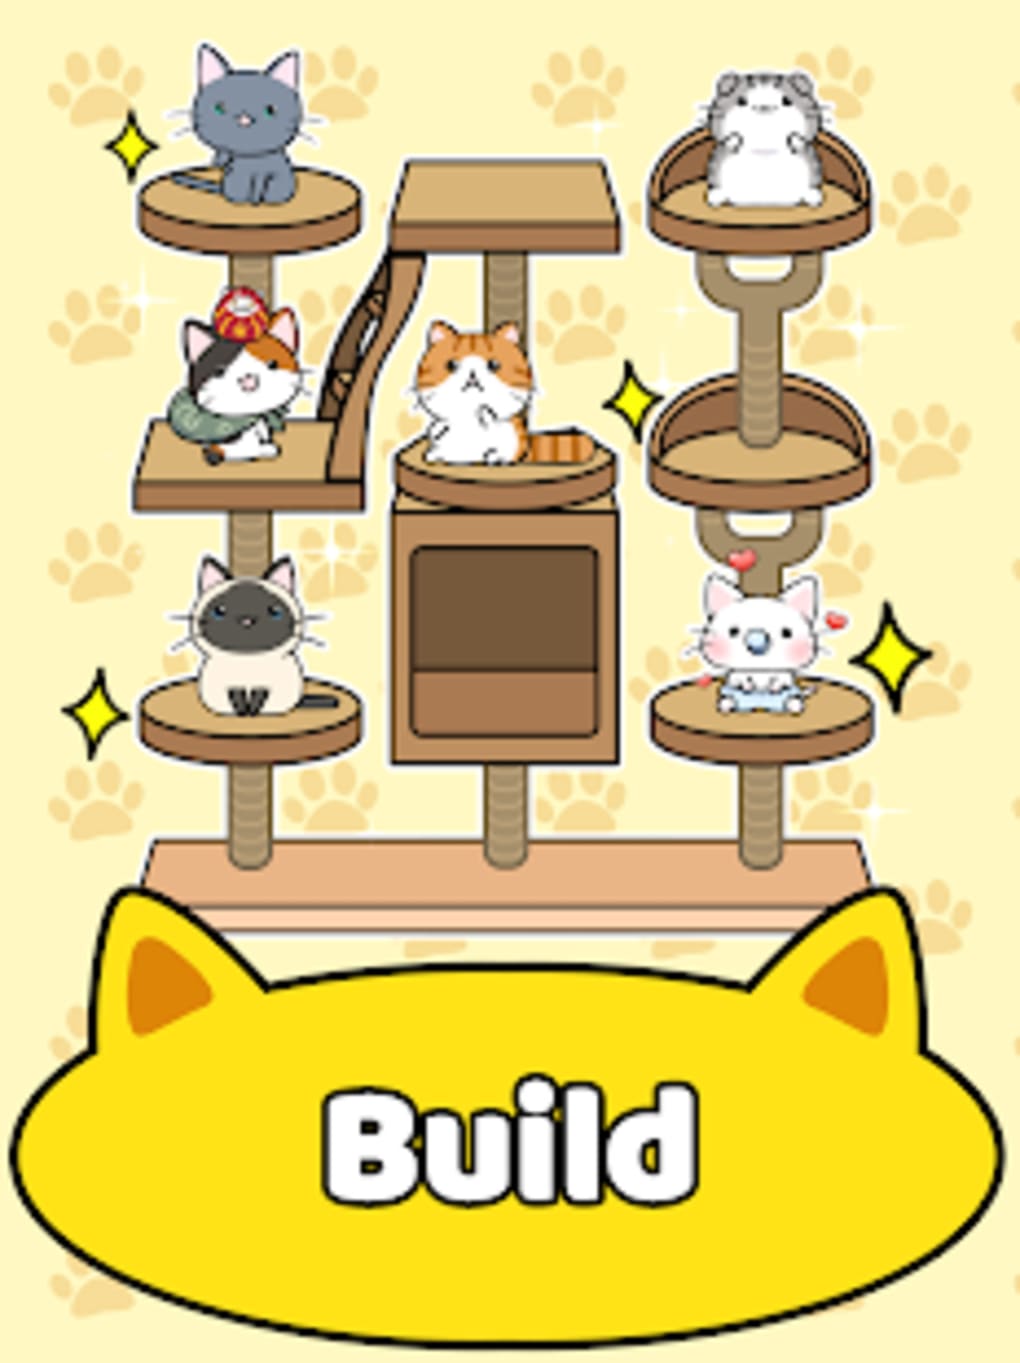 Cat Condo é o jogo para os amantes de gatinhos - Apps - SAPO Tek